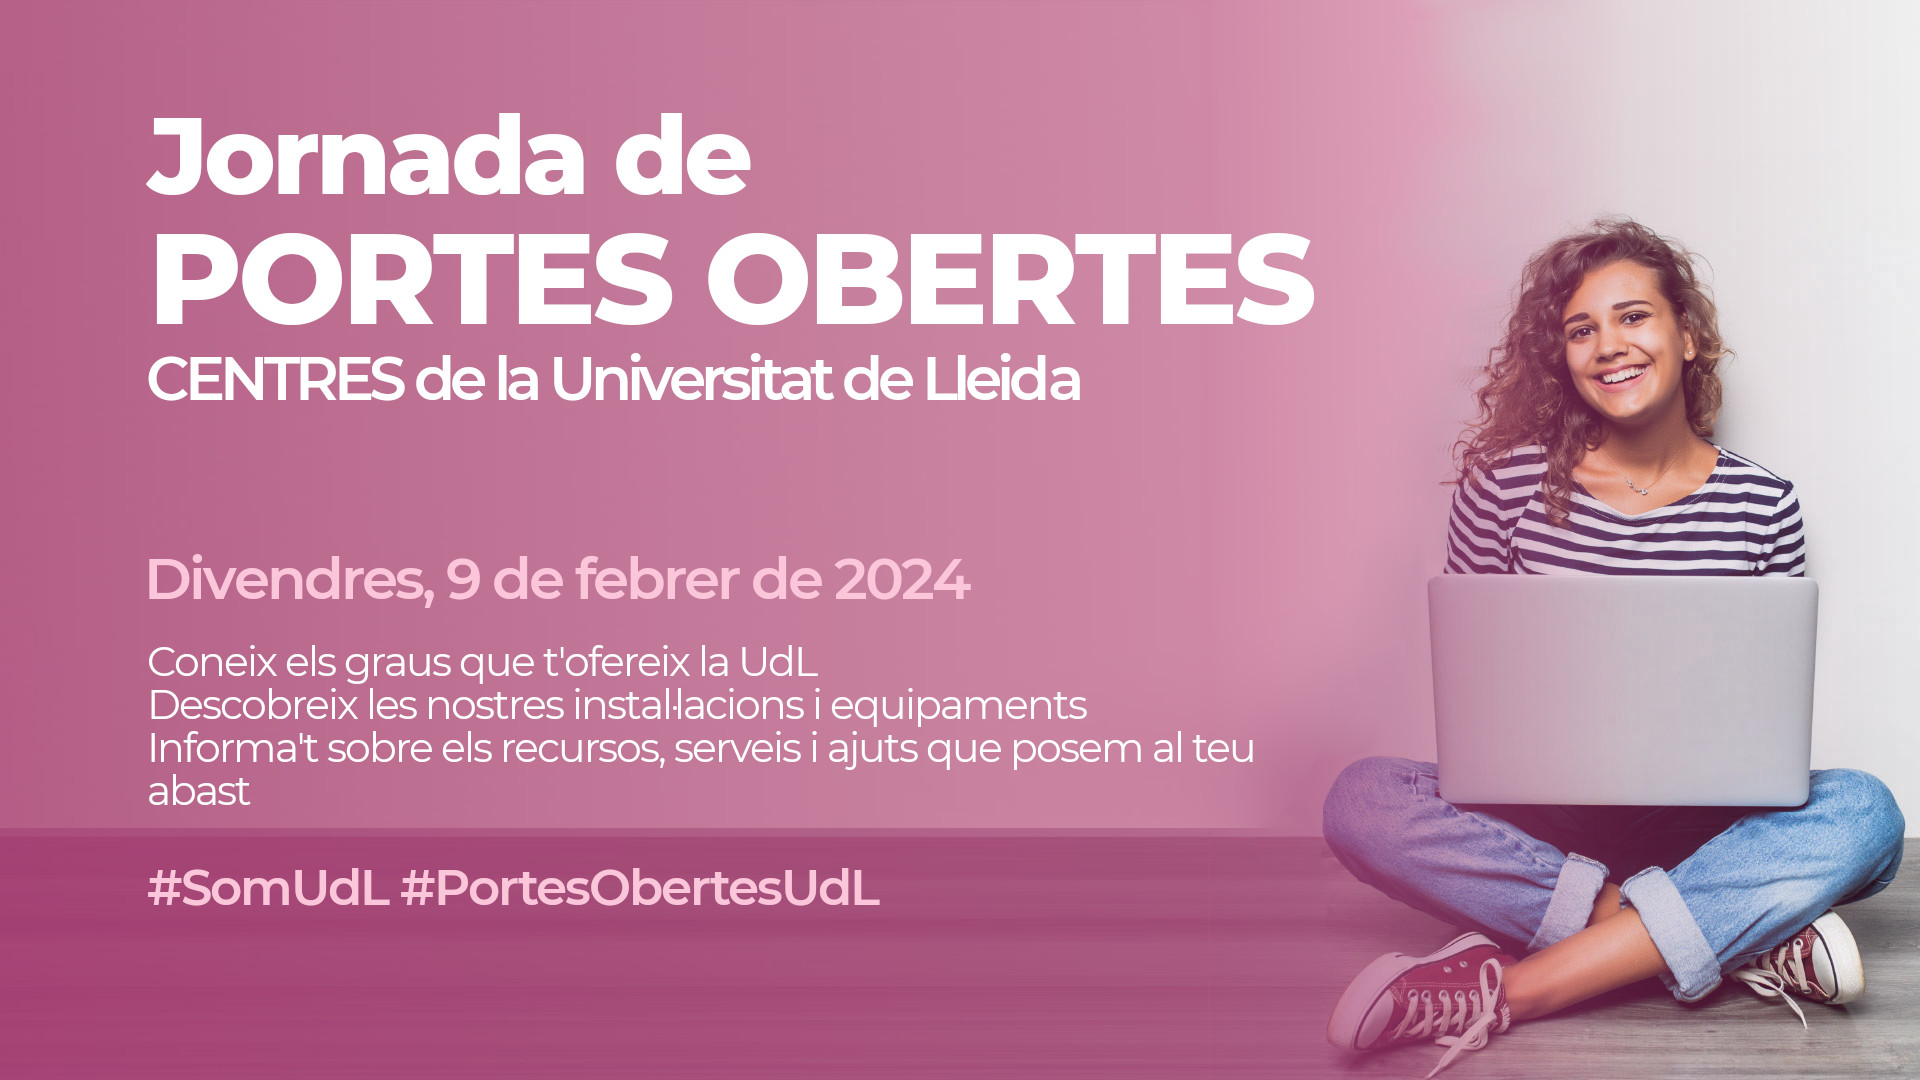 Jornada de Portes Obertes a la Universitat de Lleida